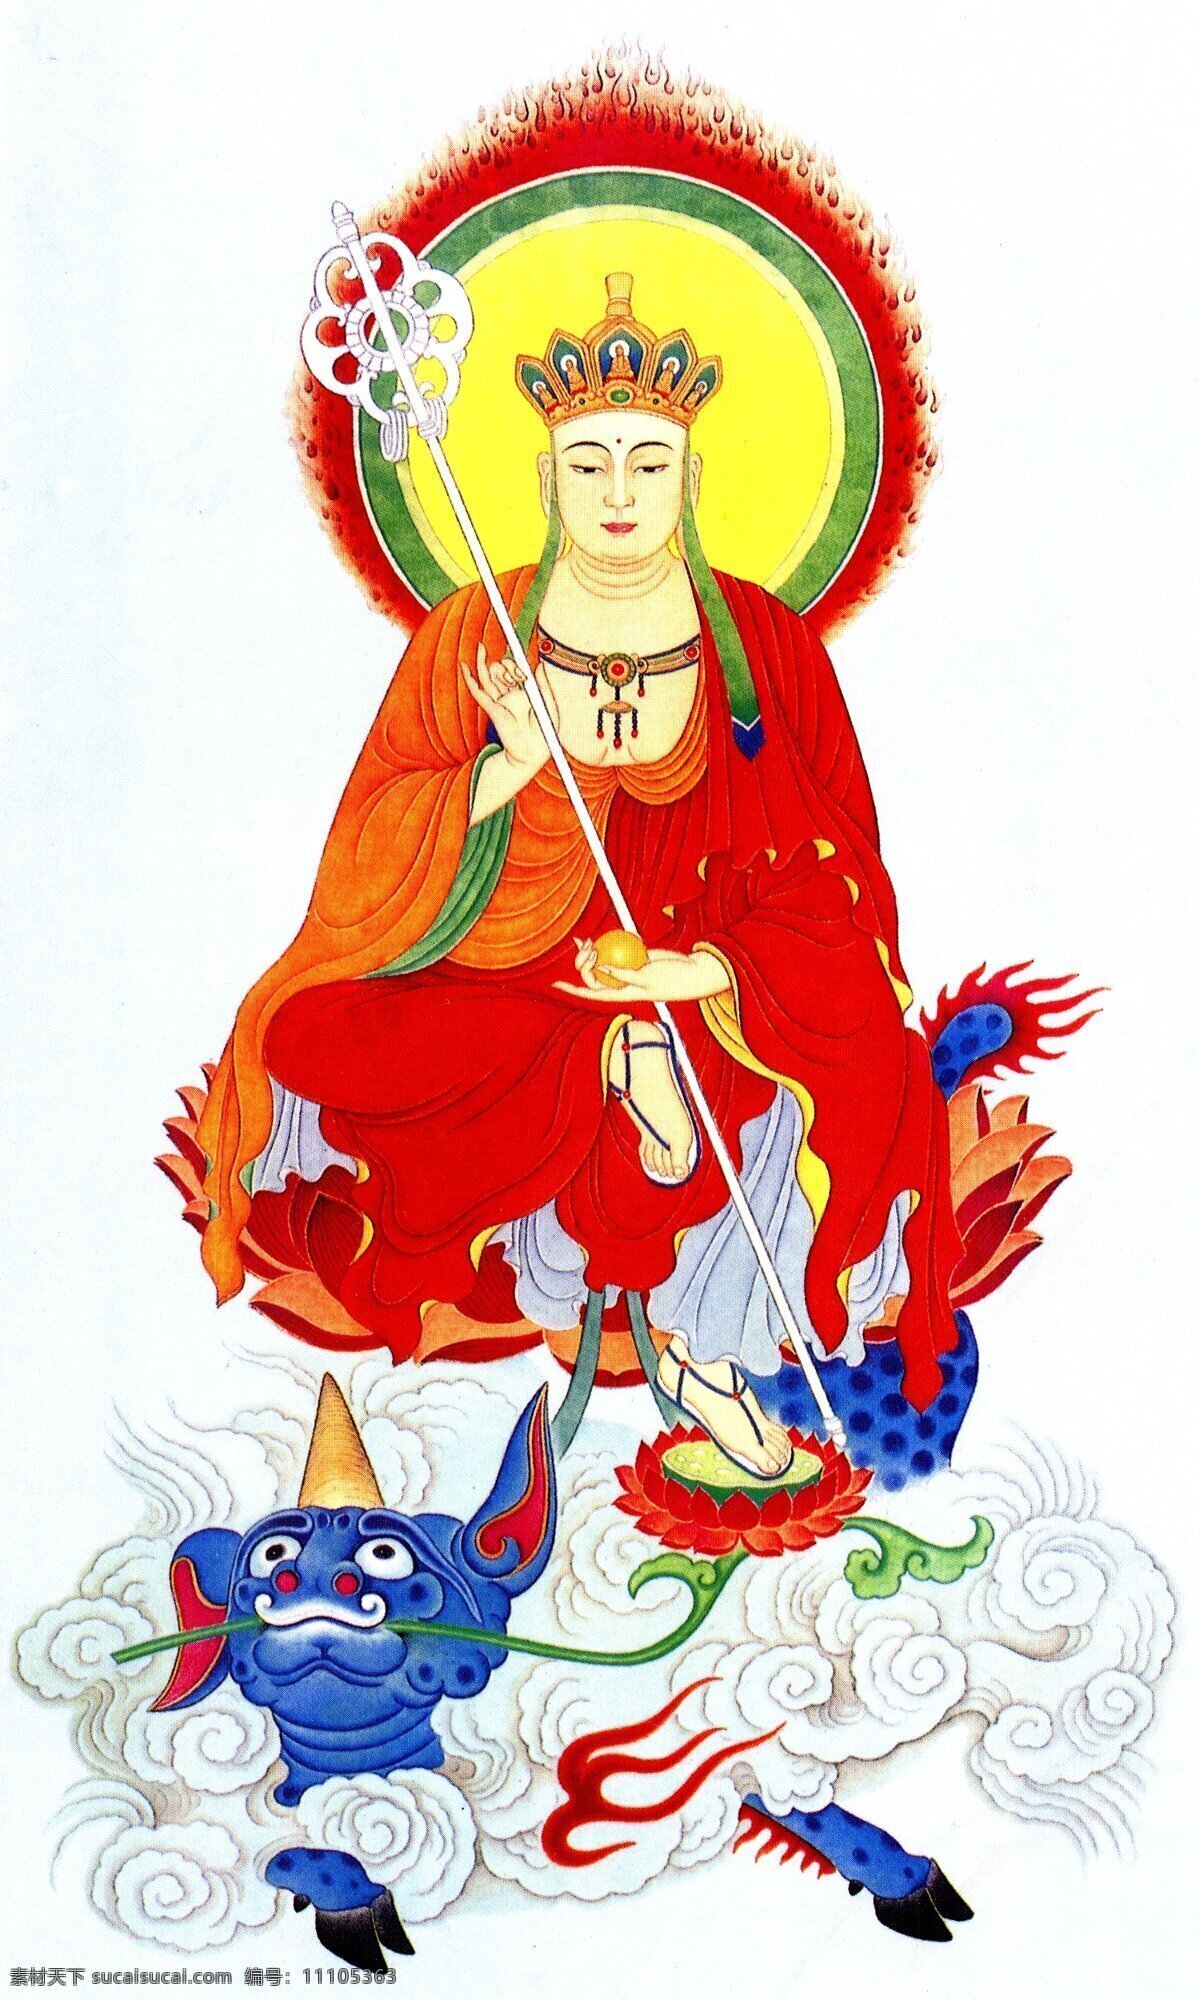 南 无地 藏王 菩萨 工笔 国画 国画欣赏 绘画书法 文化艺术 宗教信仰 佛教人物 座兽